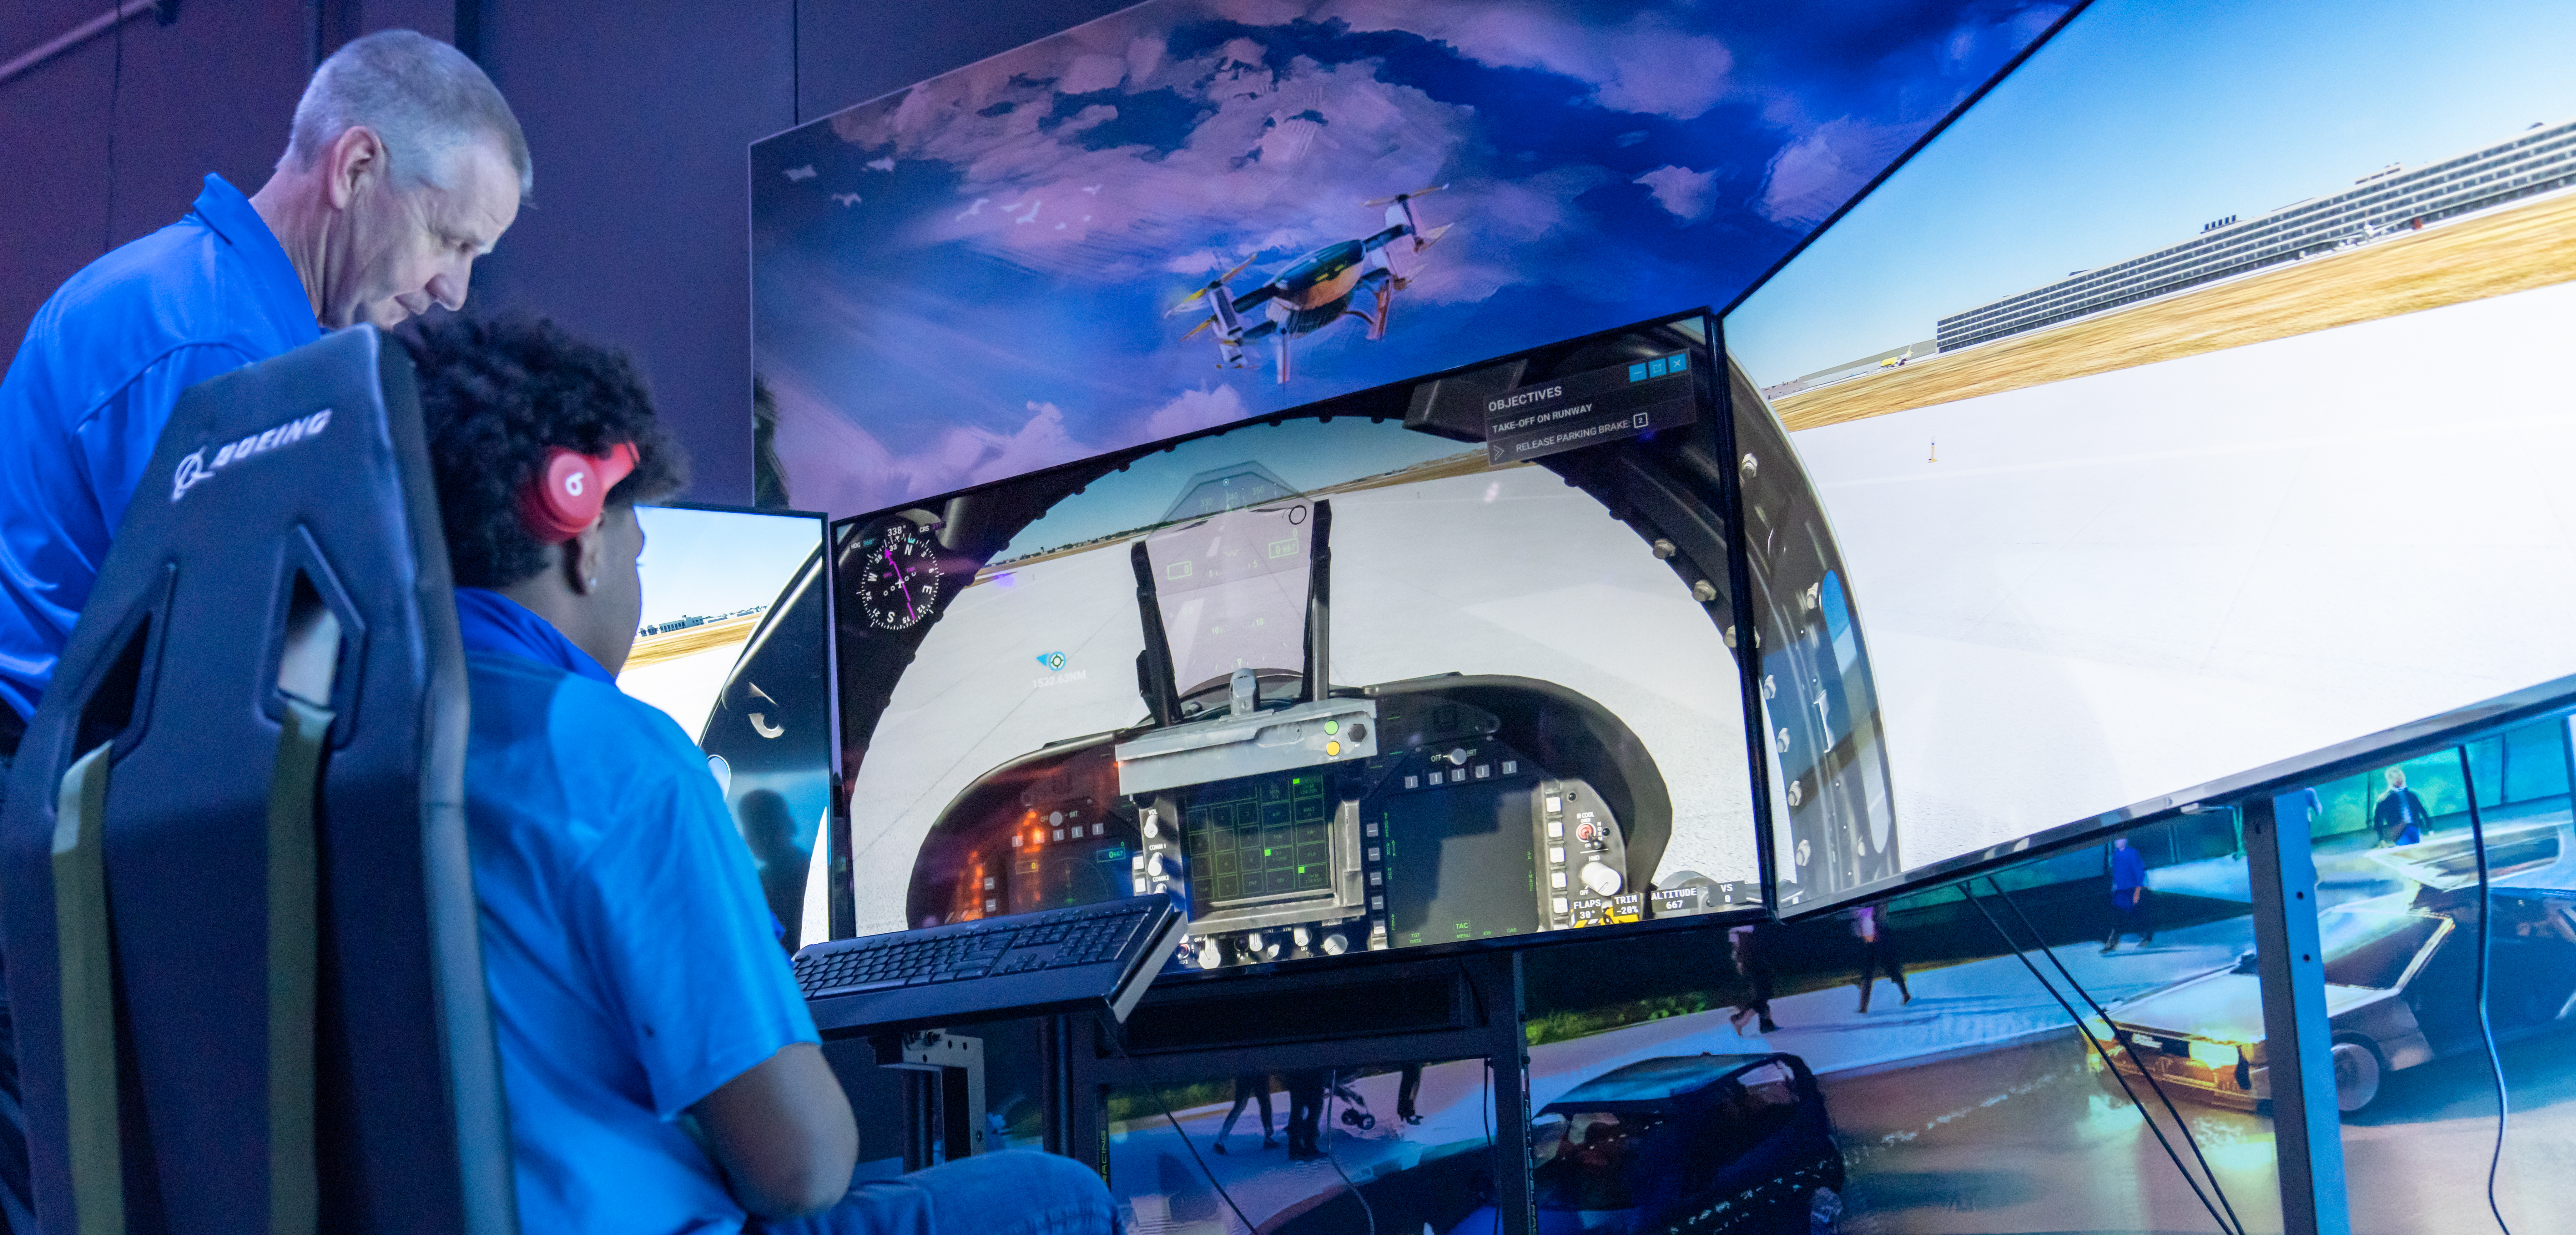 Flight Simulator Exhibit at Area 21